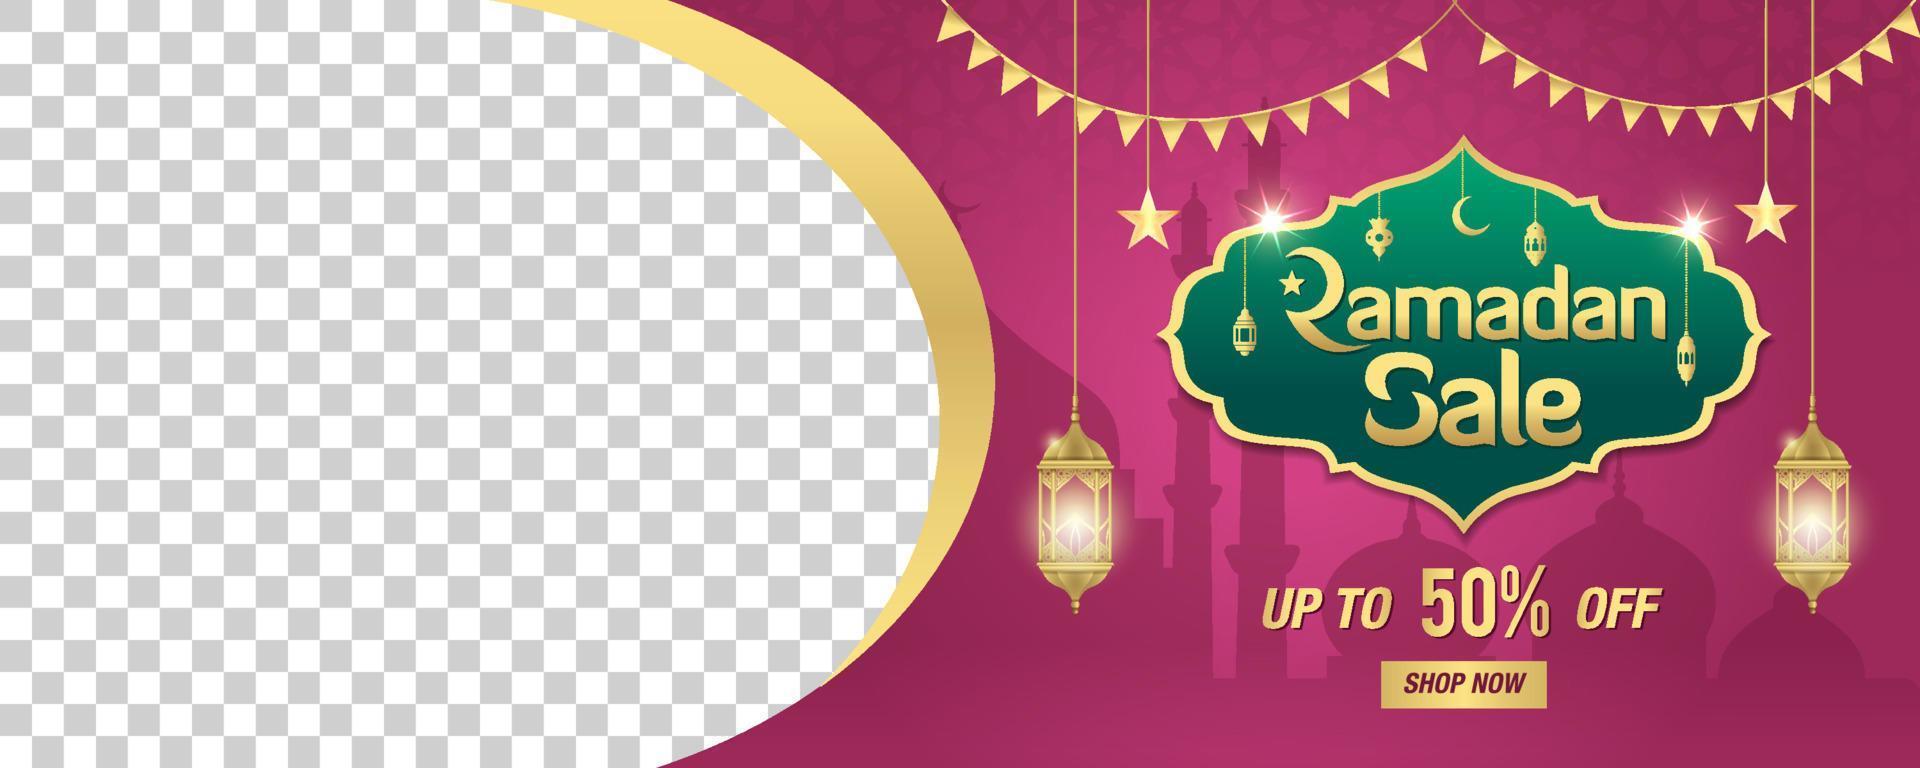 venta de ramadán, encabezado web o diseño de banner con marco dorado brillante, farolillos árabes y espacio para la imagen vector